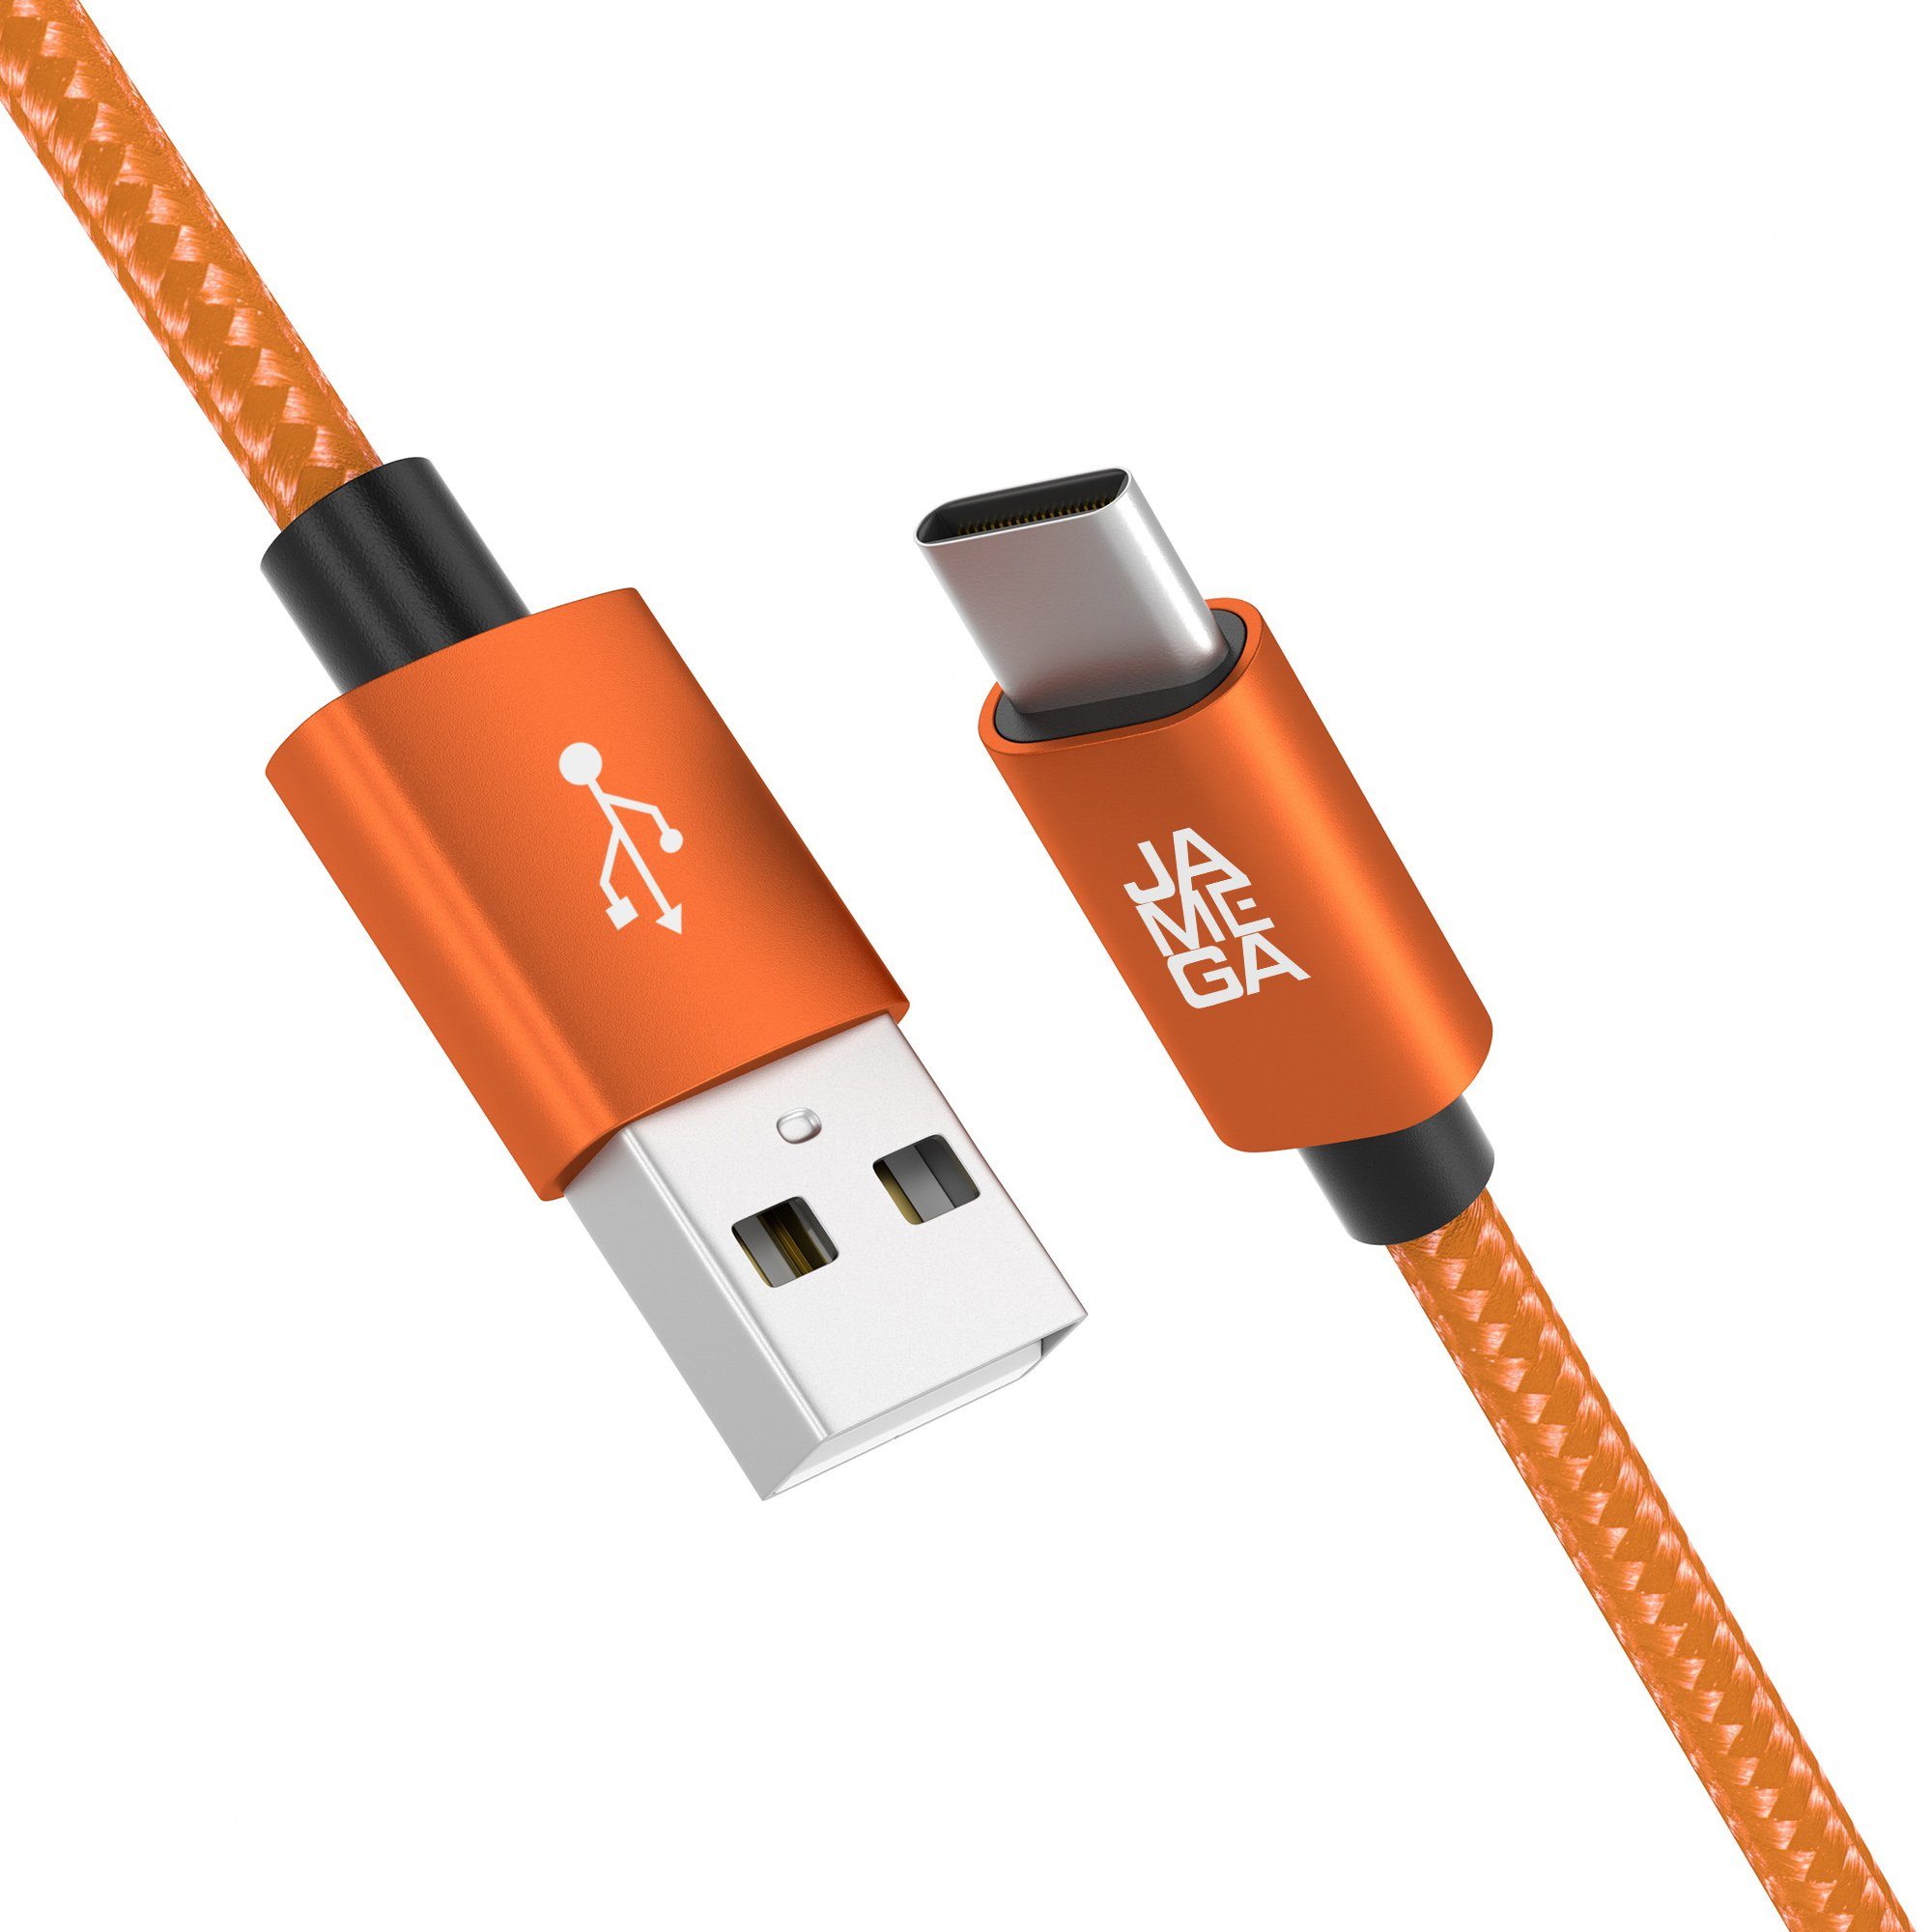 JAMEGA USB C Datenkabel SCHNELL Ladekabel für Samsung usw.- mehrere Längen USB-Kabel, (200 cm)